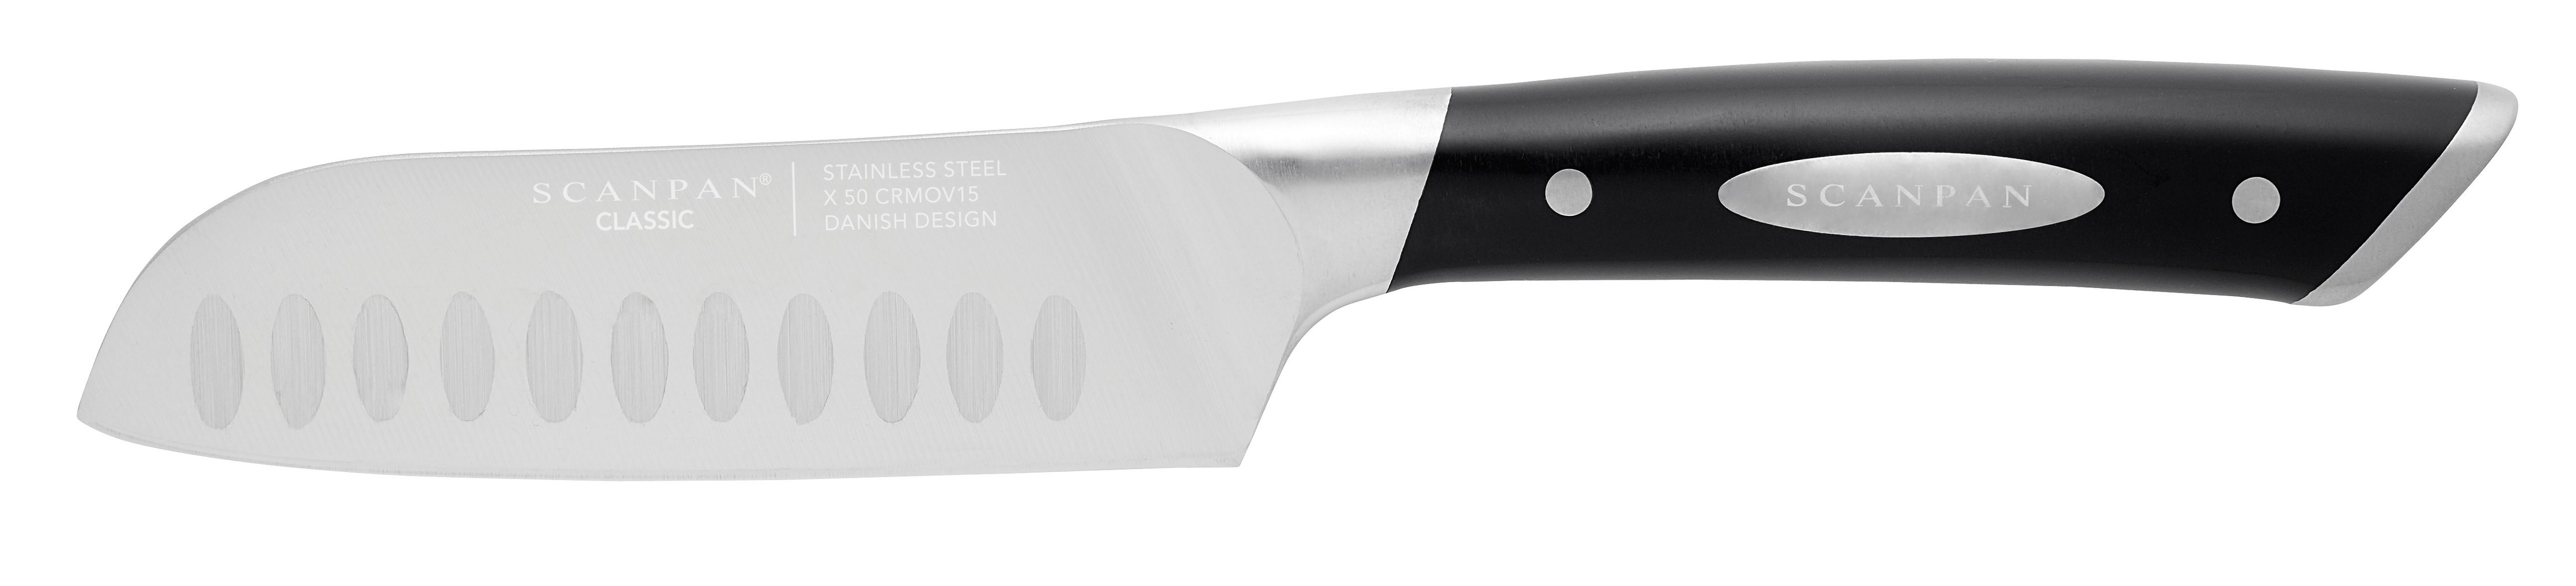 Scanpan Classic Santoku Knife 12 5cm